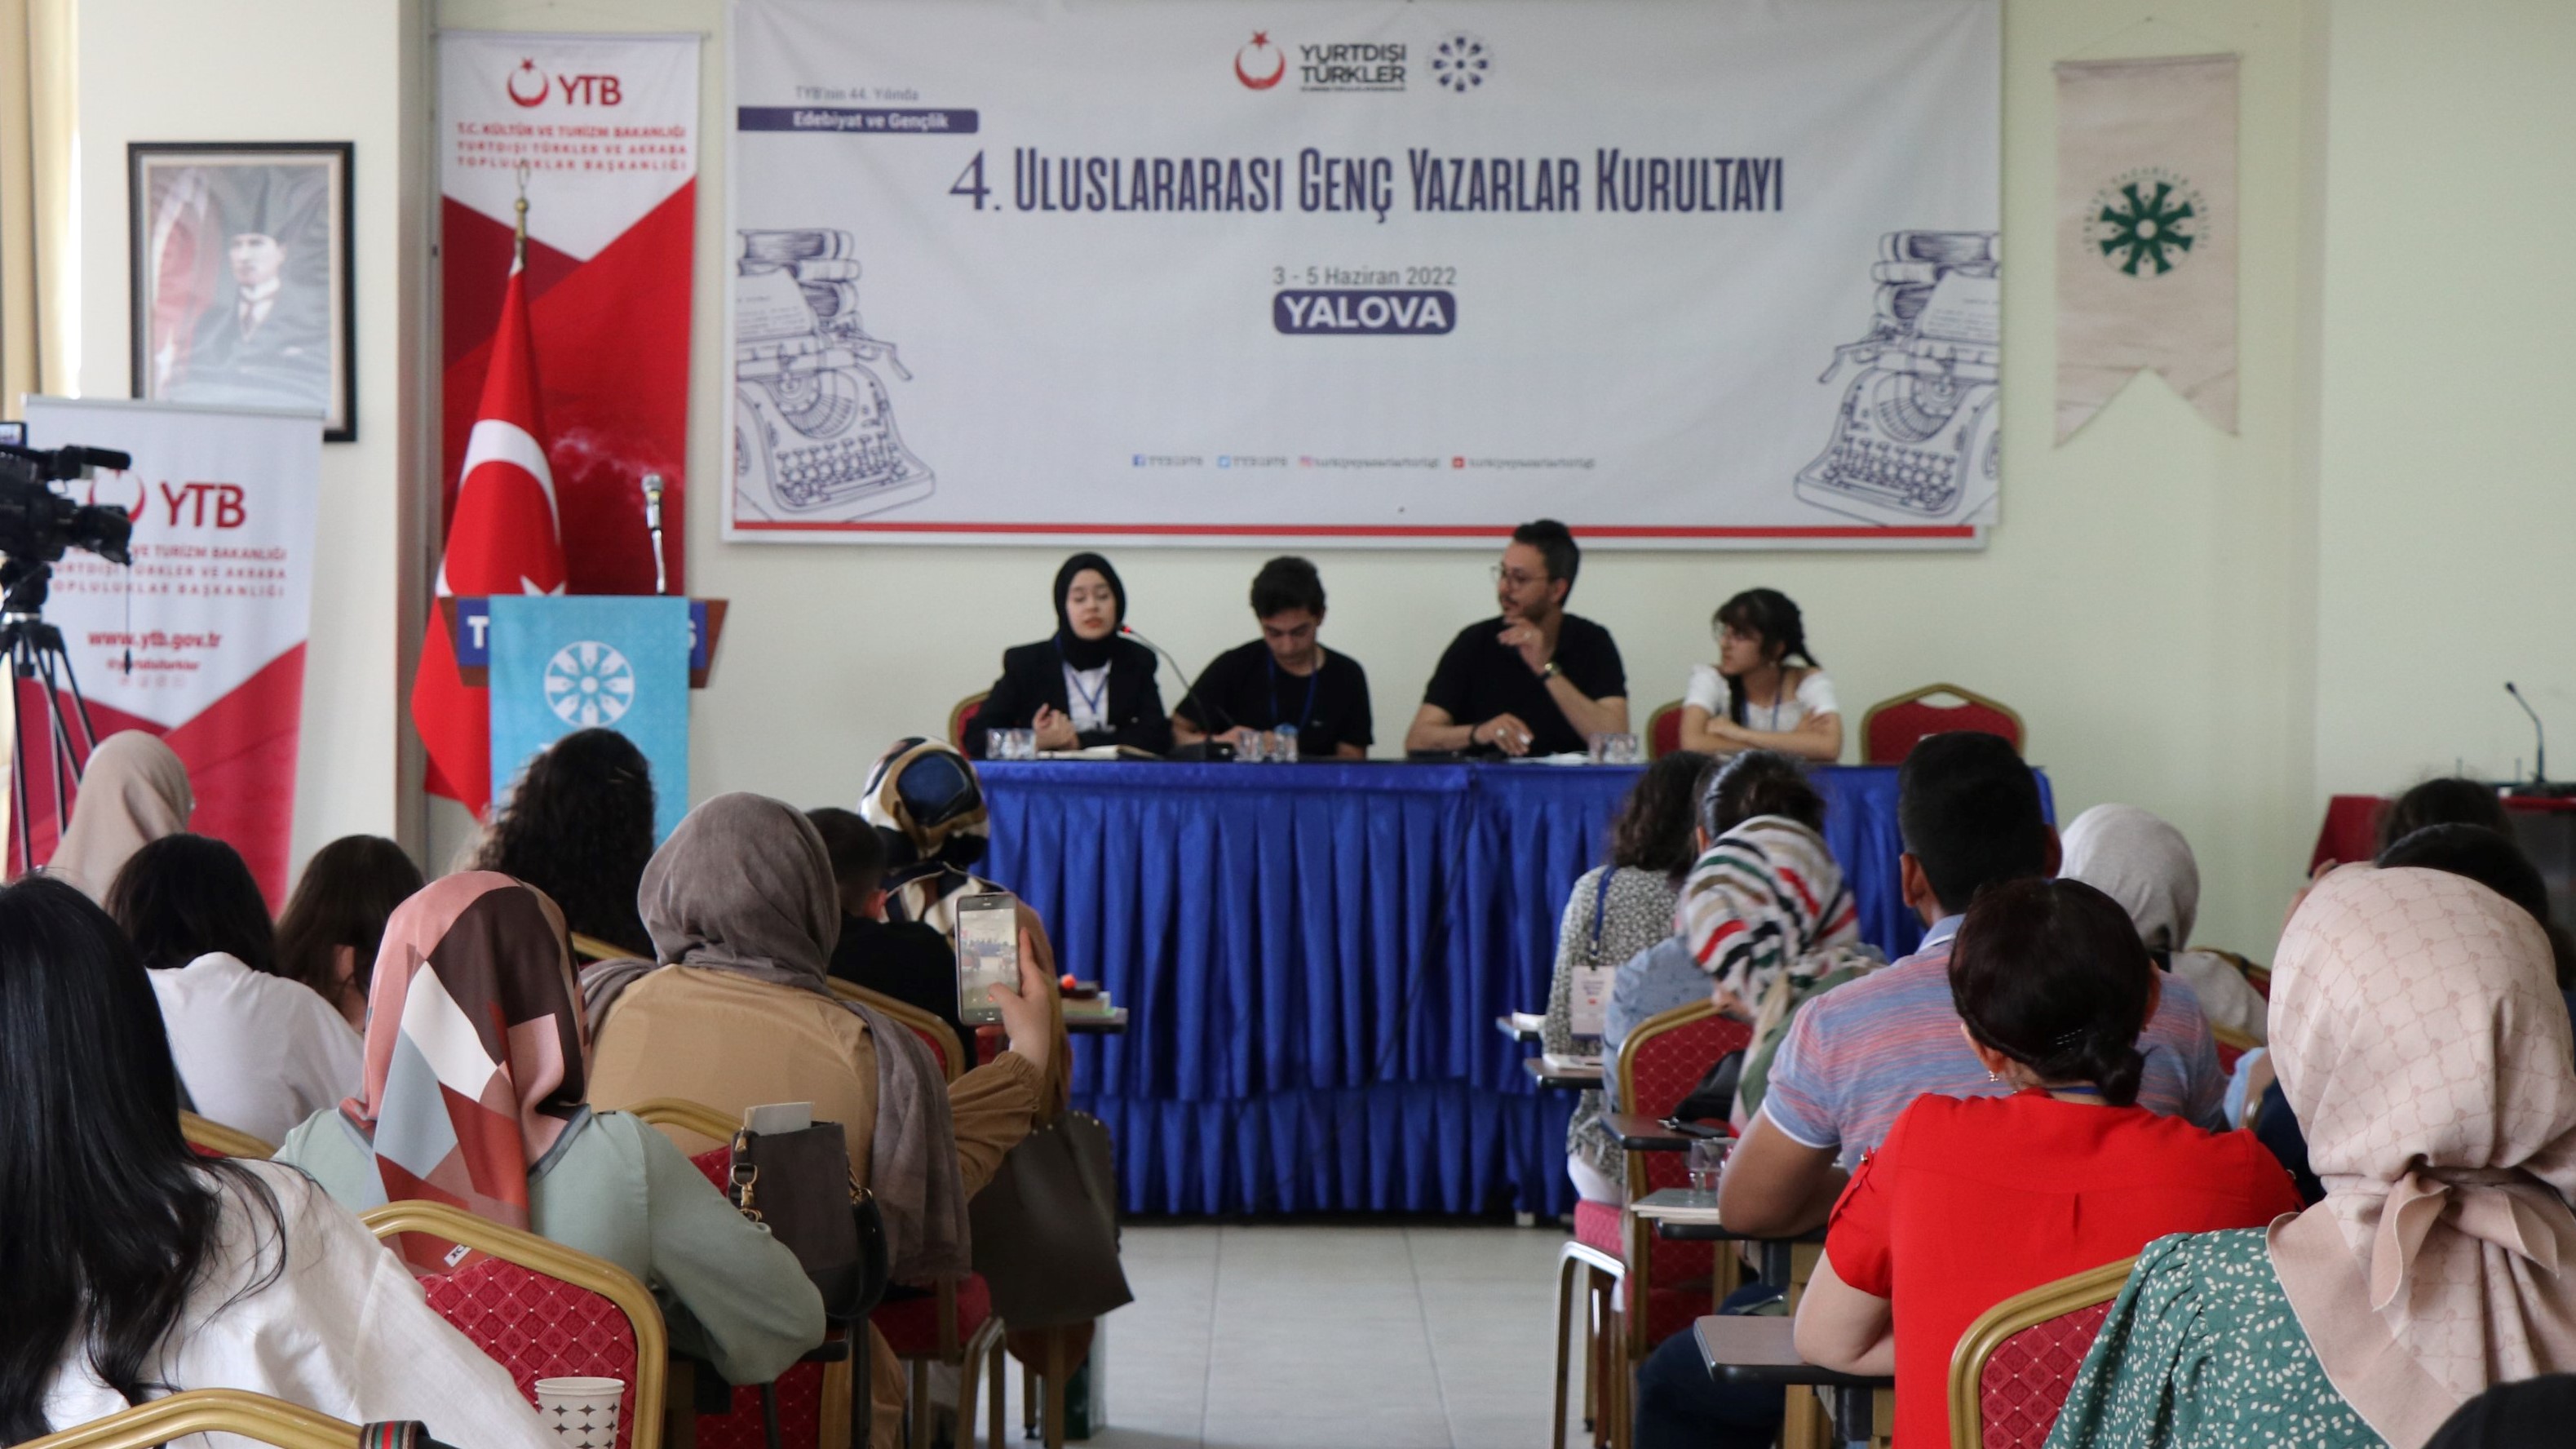 4. Uluslararası Genç Yazarlar Kurultayı Yalova’da devam ediyor